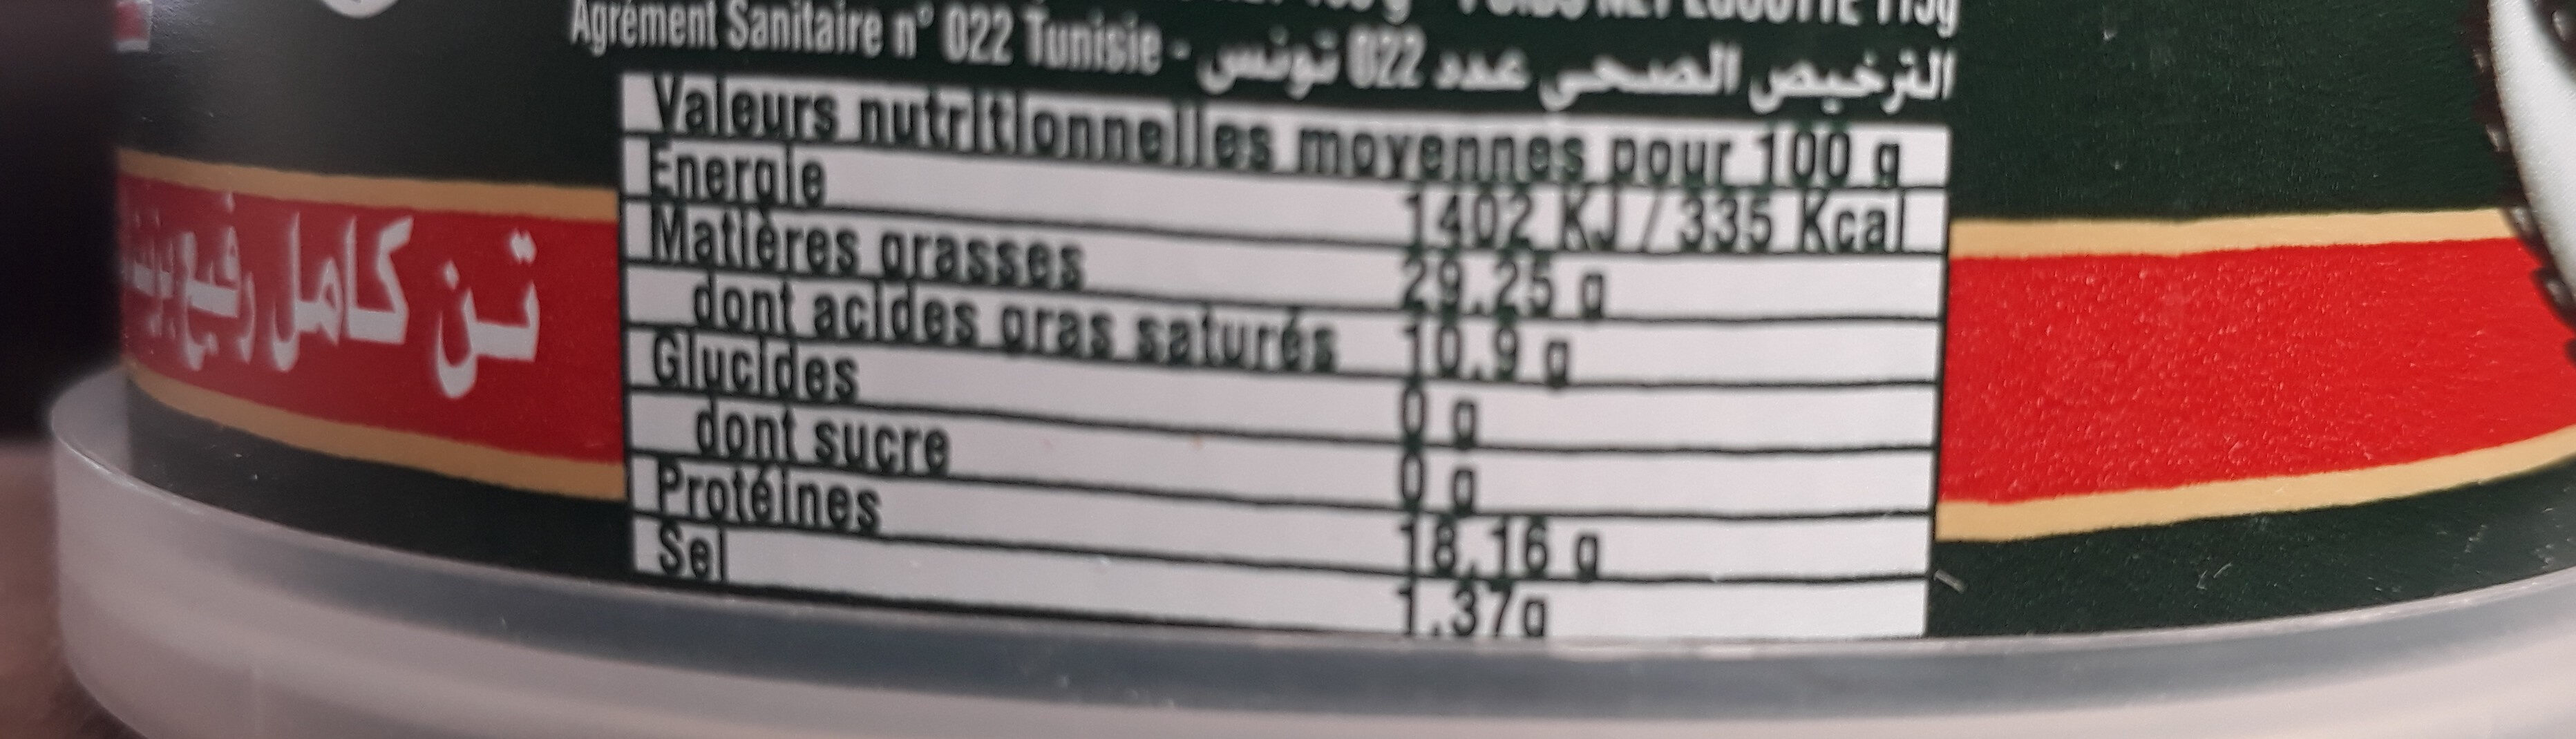 Thon el Manar extra - Nutrition facts